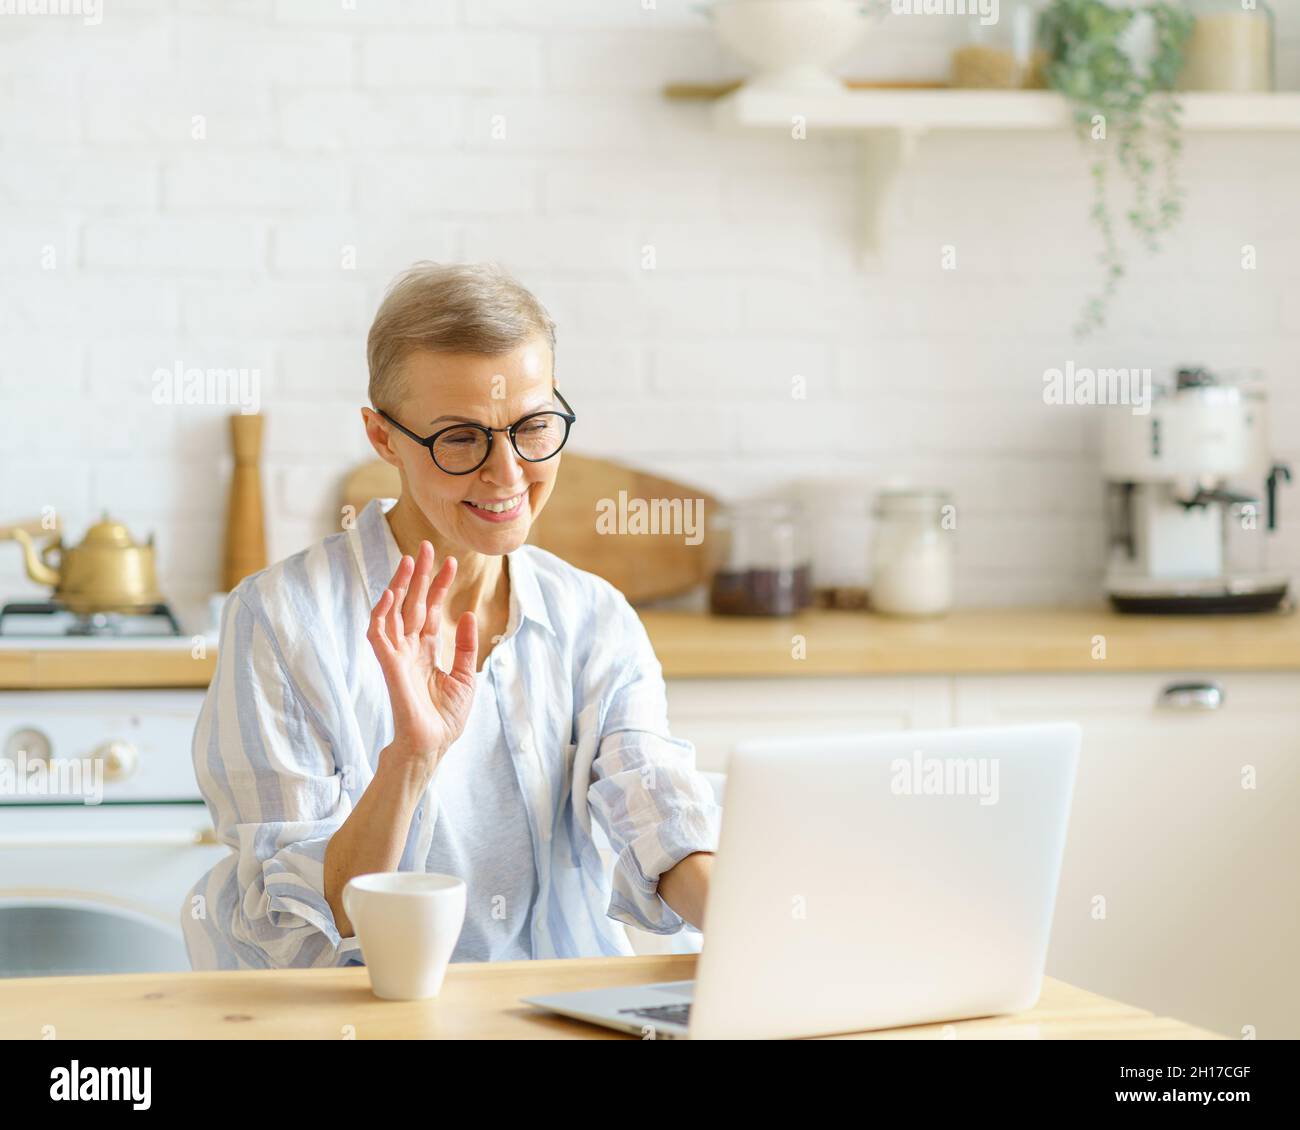 Eine moderne, glückliche ältere Frau mit Brille, die während des Online-Studiums an der Webcam am Laptop winkt Stockfoto